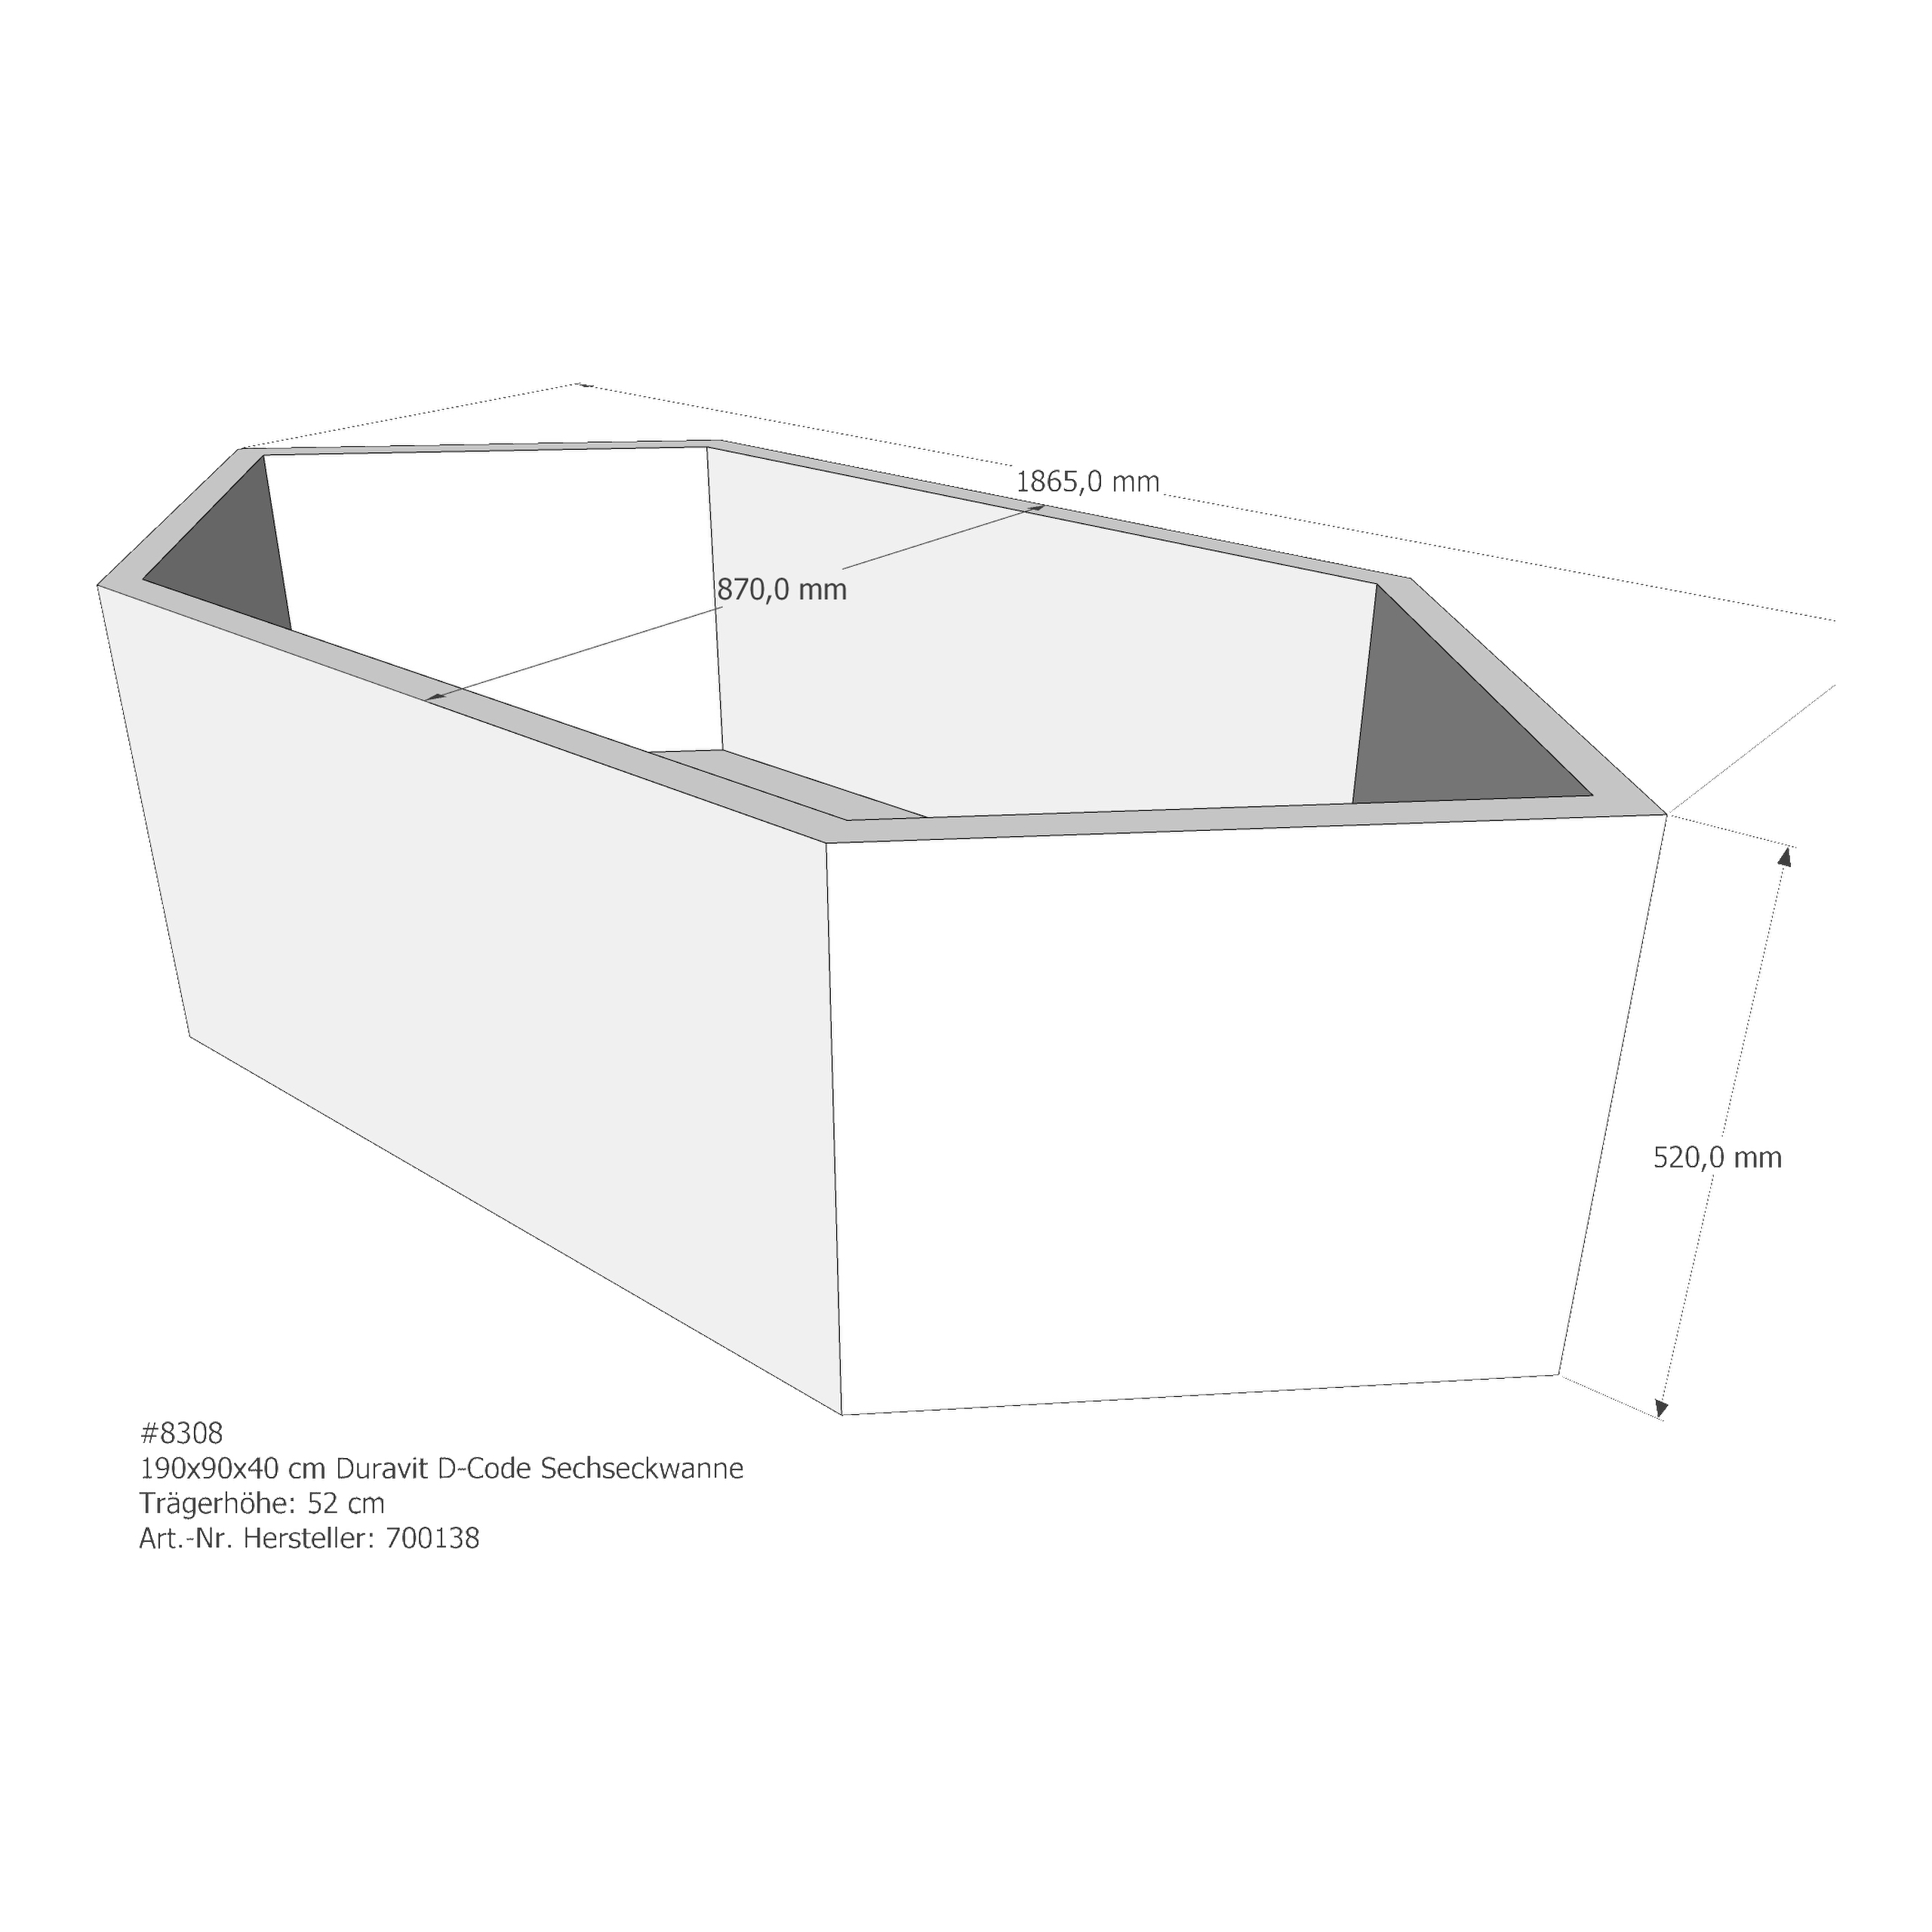 Badewannenträger für Duravit D-Code 190 × 90 × 40 cm